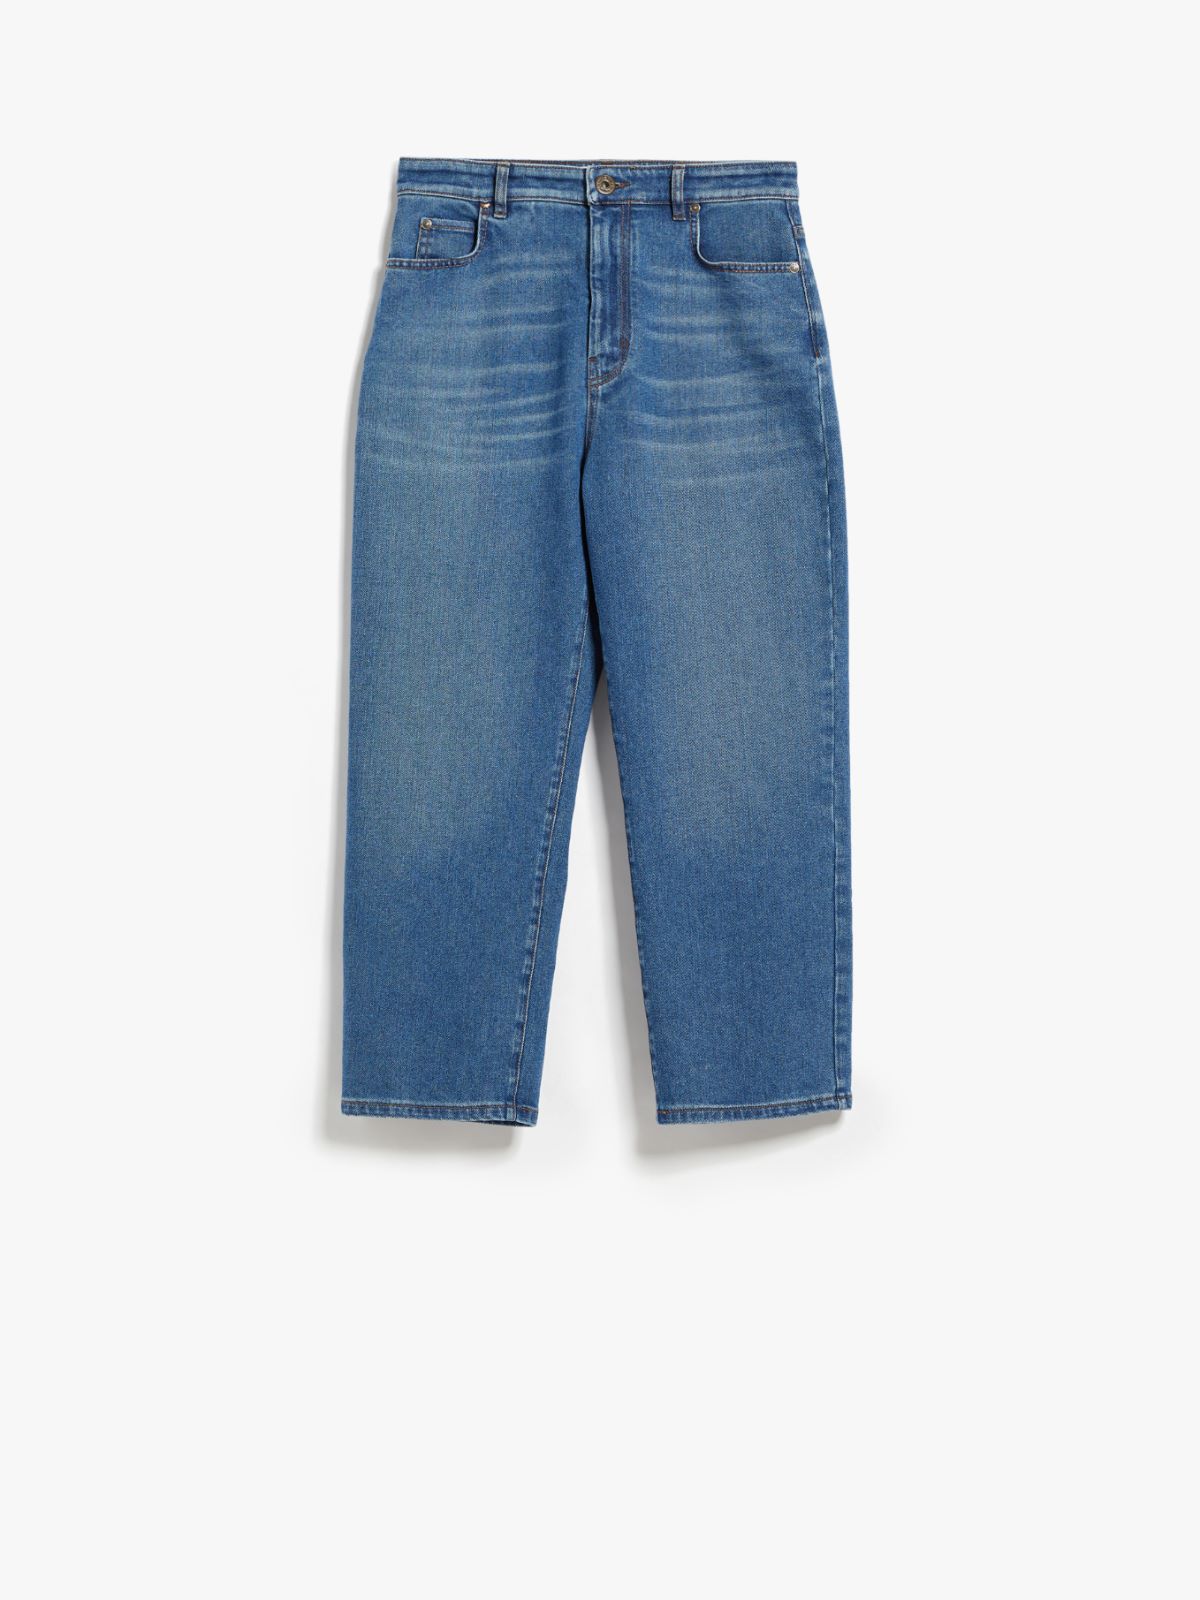 Cropped denim jeans - NAVY - Weekend Max Mara - 5